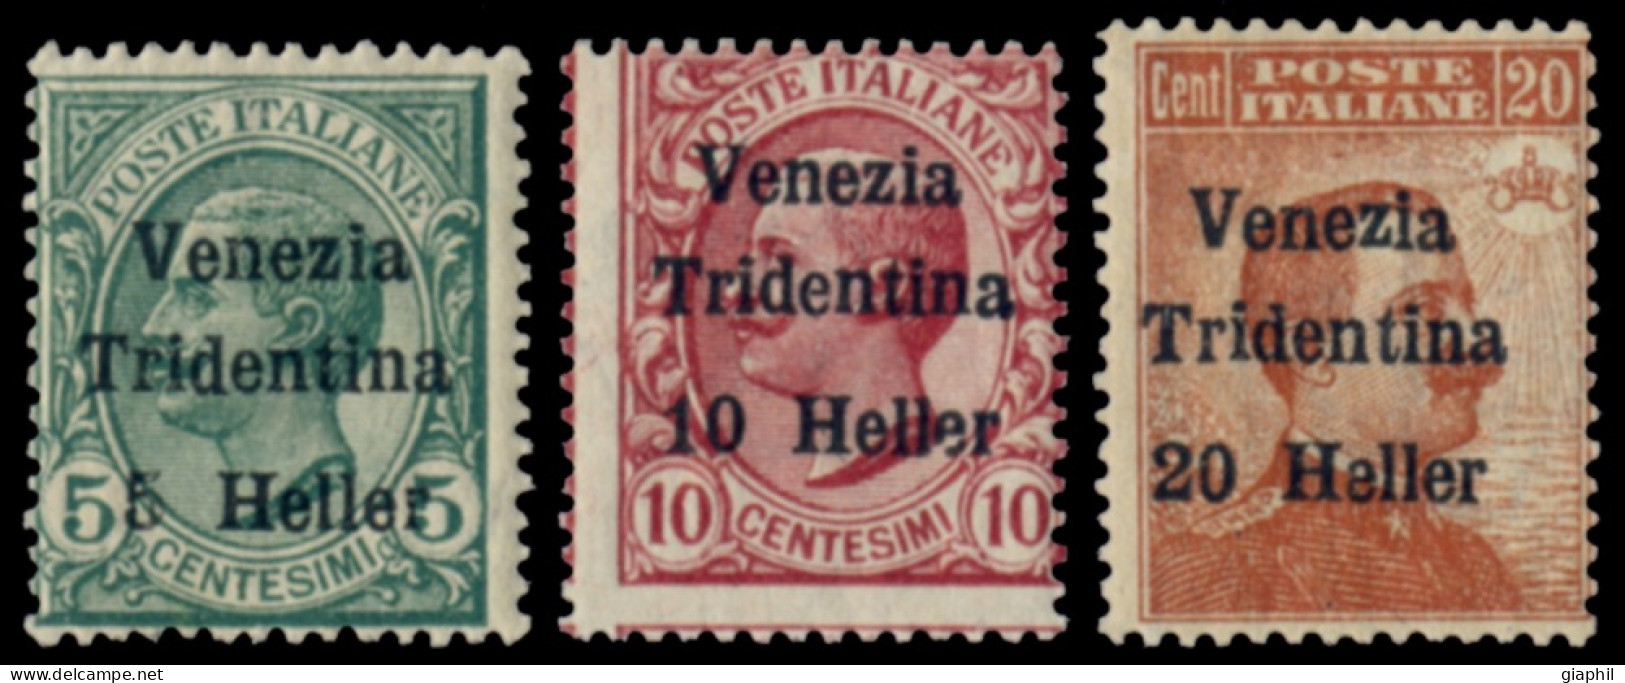 ITALY ITALIA TRENTINO-ALTO ADIGE 1919 SERIE COMPLETA (Sass. 28-30) NUOVA LINGUELLATA - Trentin